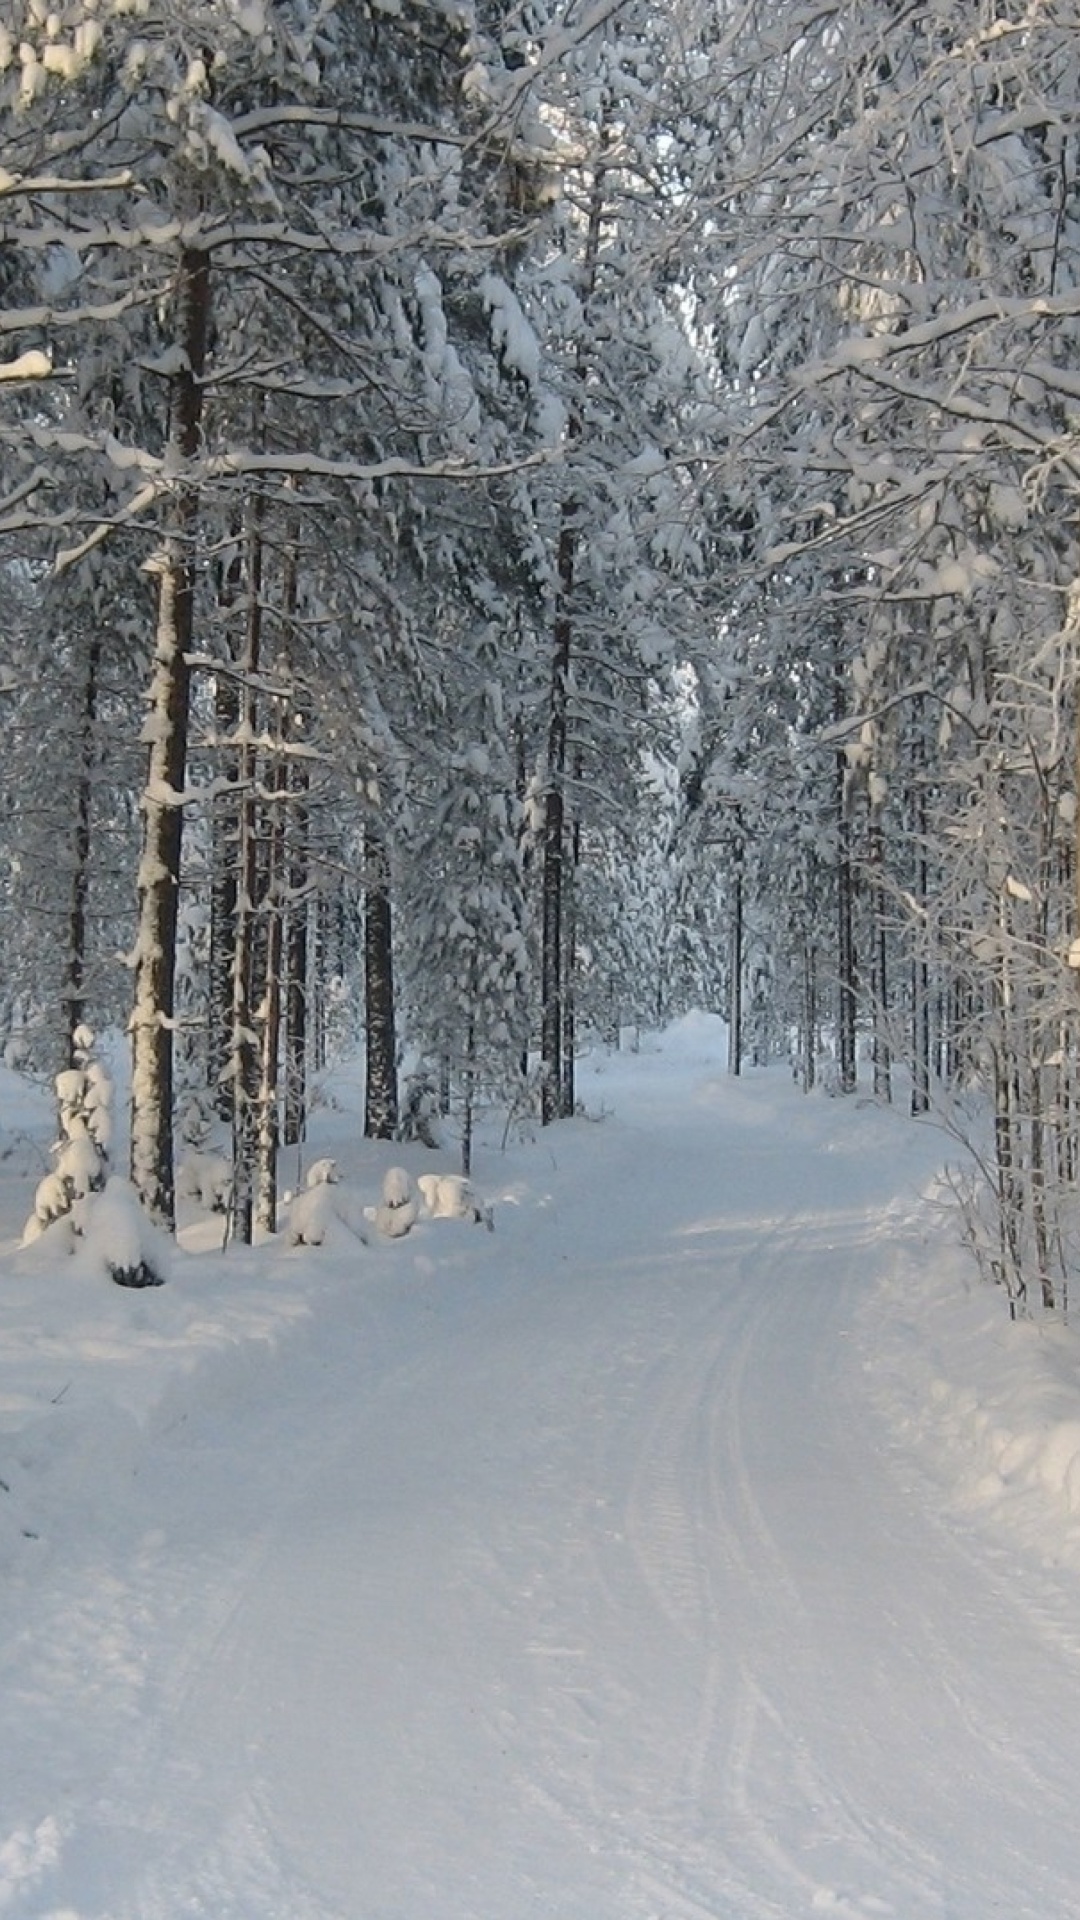 Winter snowy forest screenshot #1 1080x1920